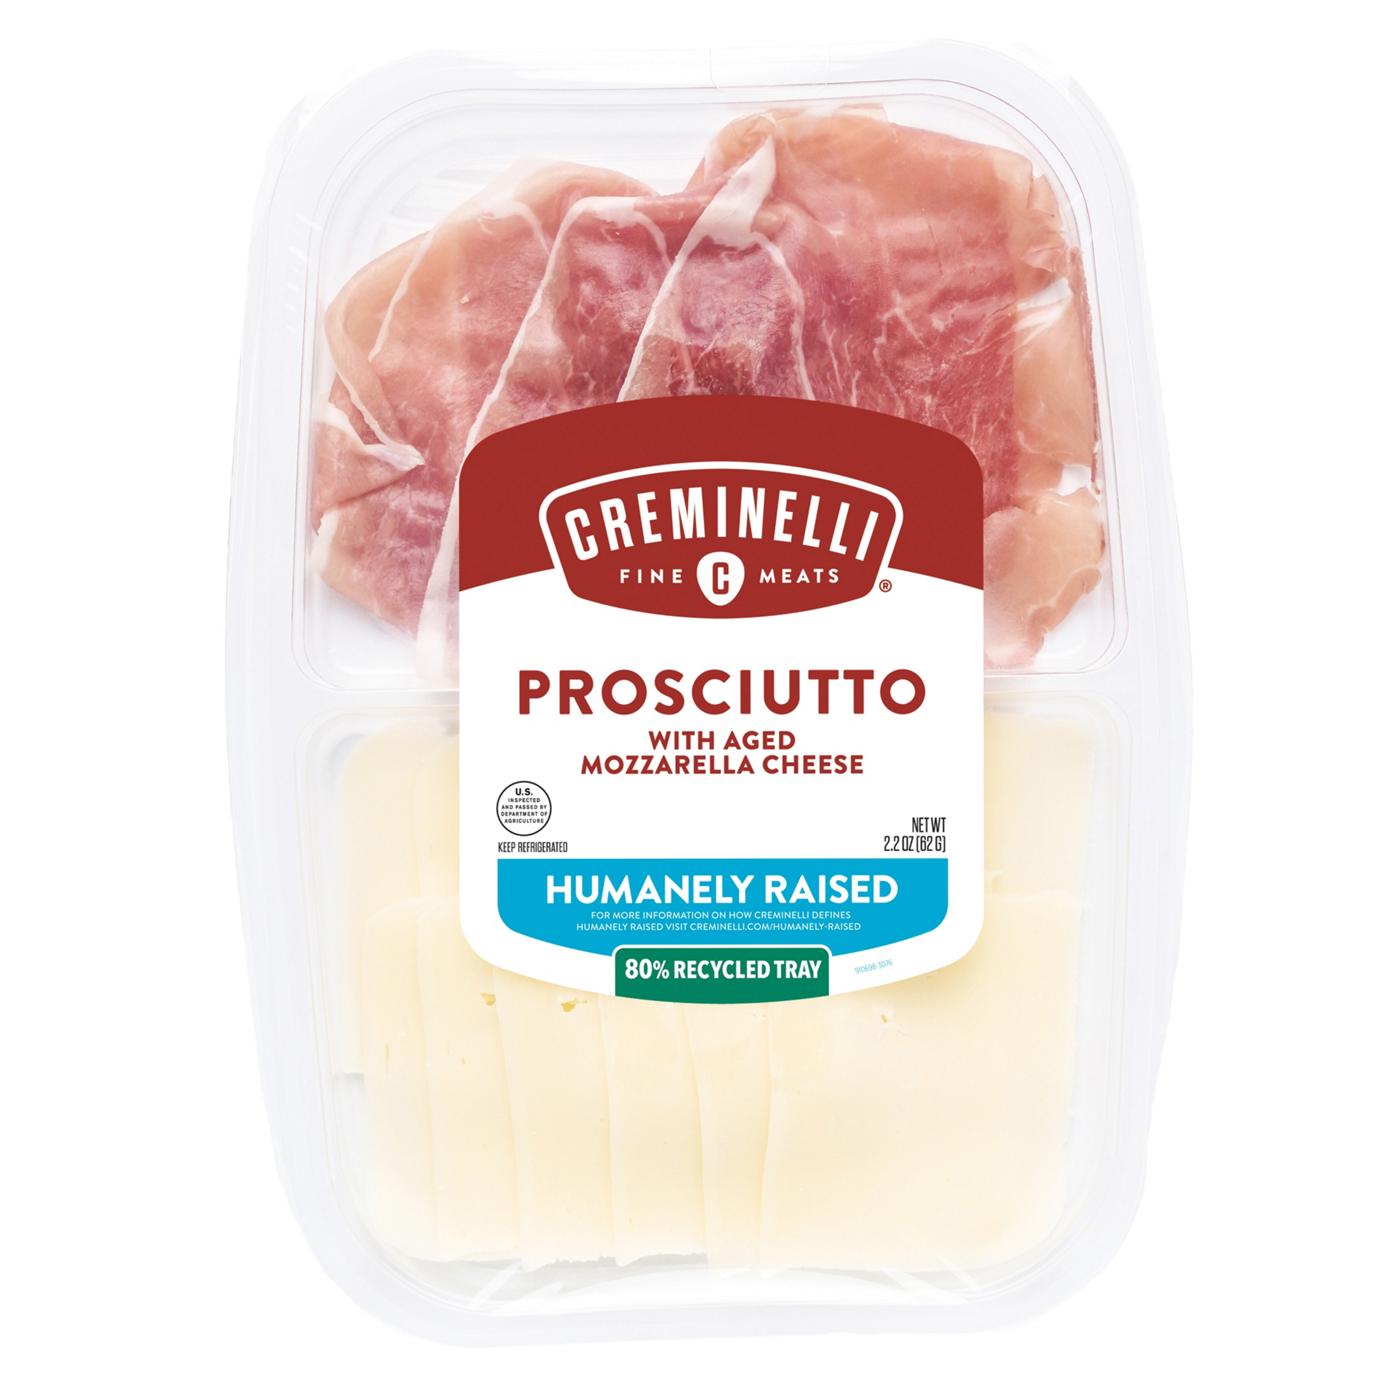 Creminelli Fine Meats Prosciutto with Aged Mozzarella Cheese; image 1 of 2